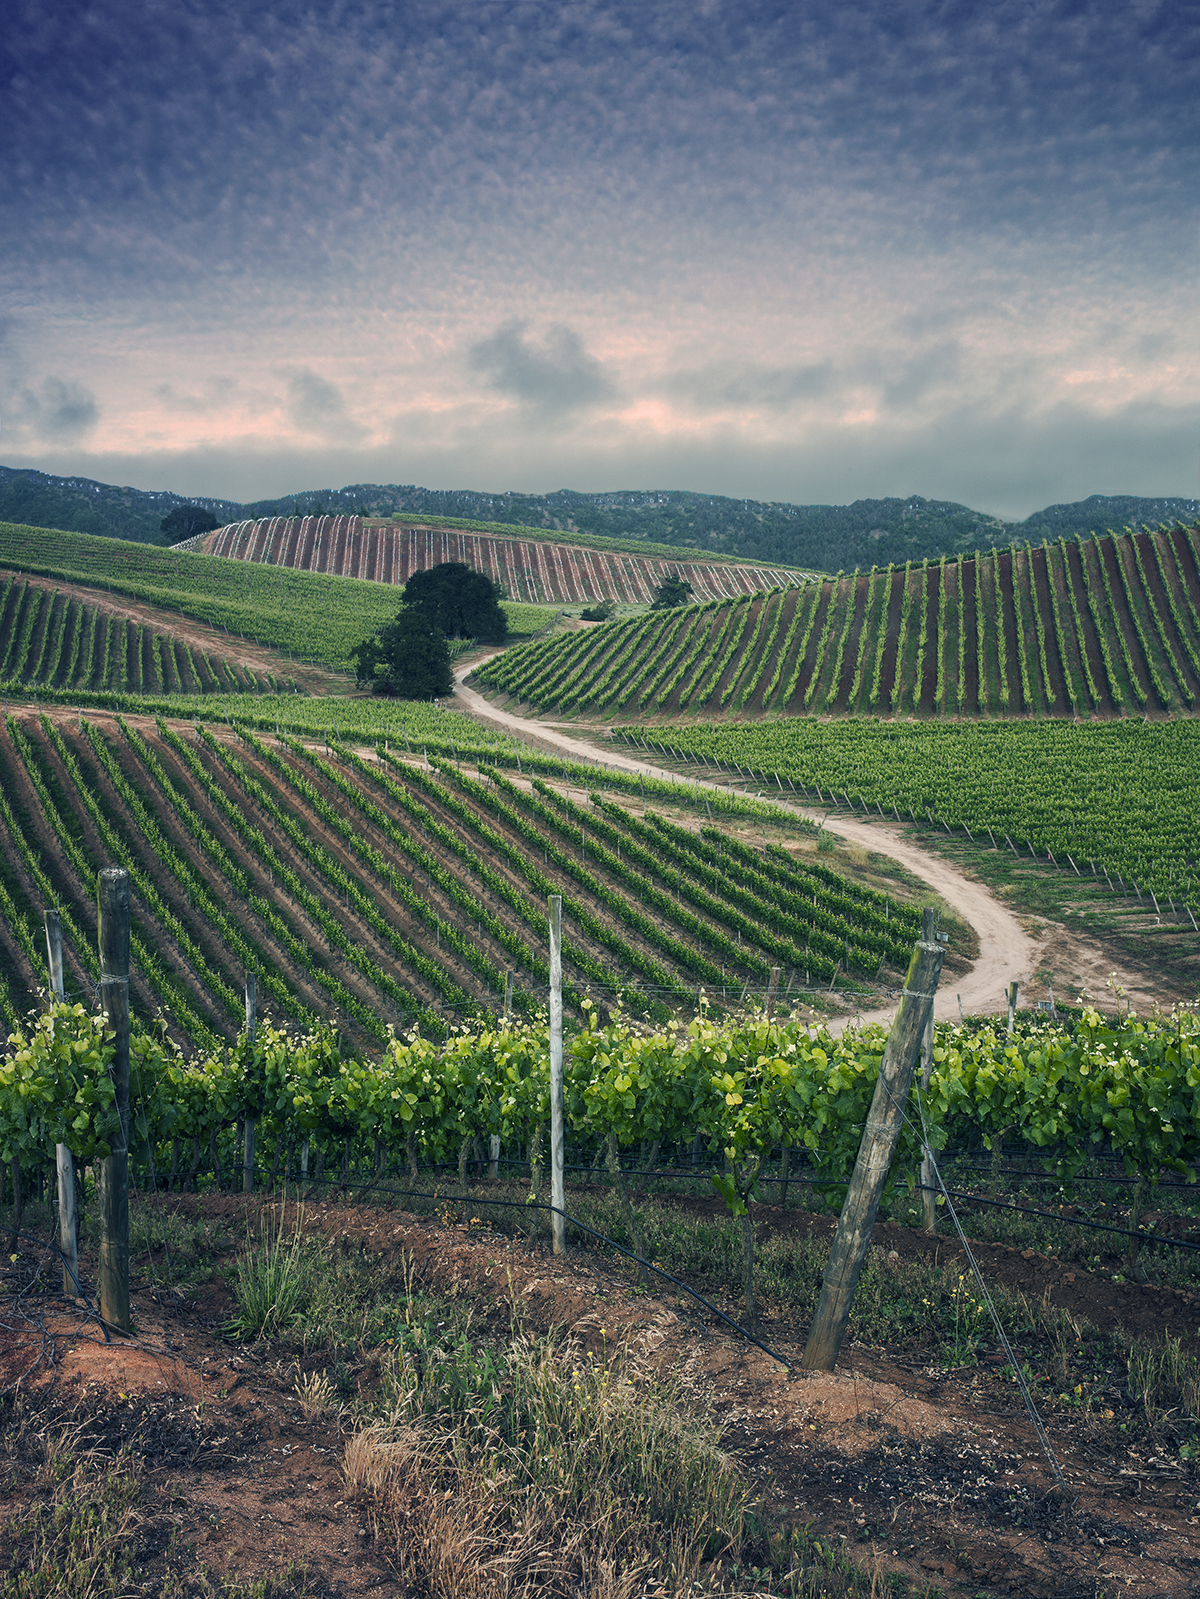 Rolling fields of vineyards